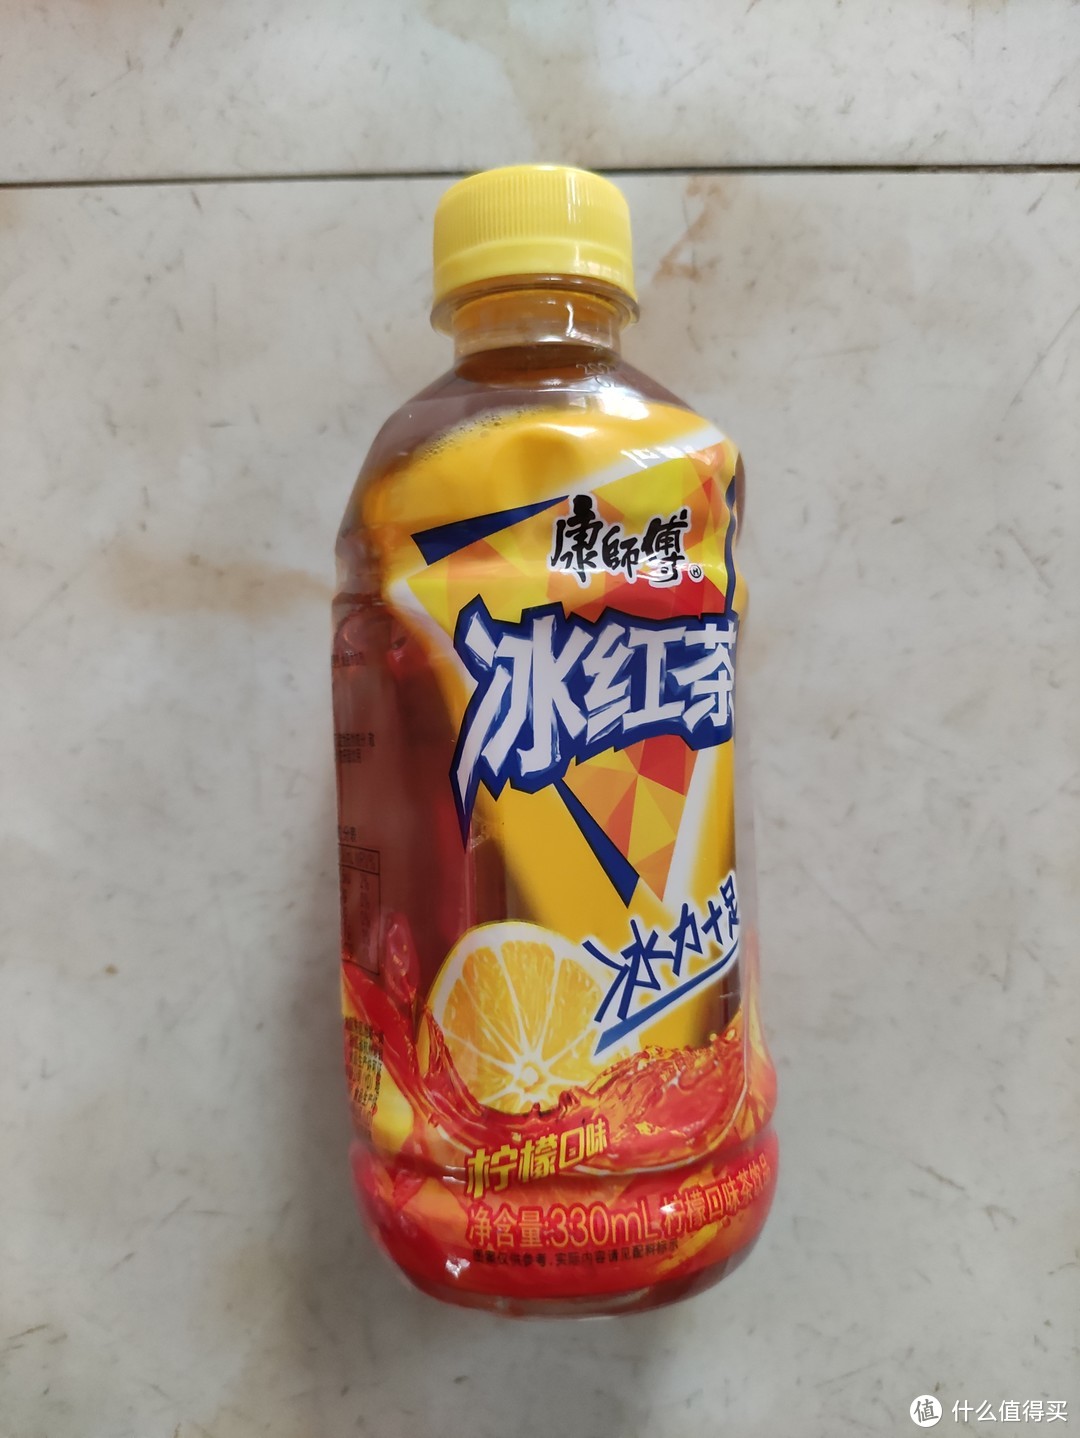 康师傅冰红茶330ml瓶装分享